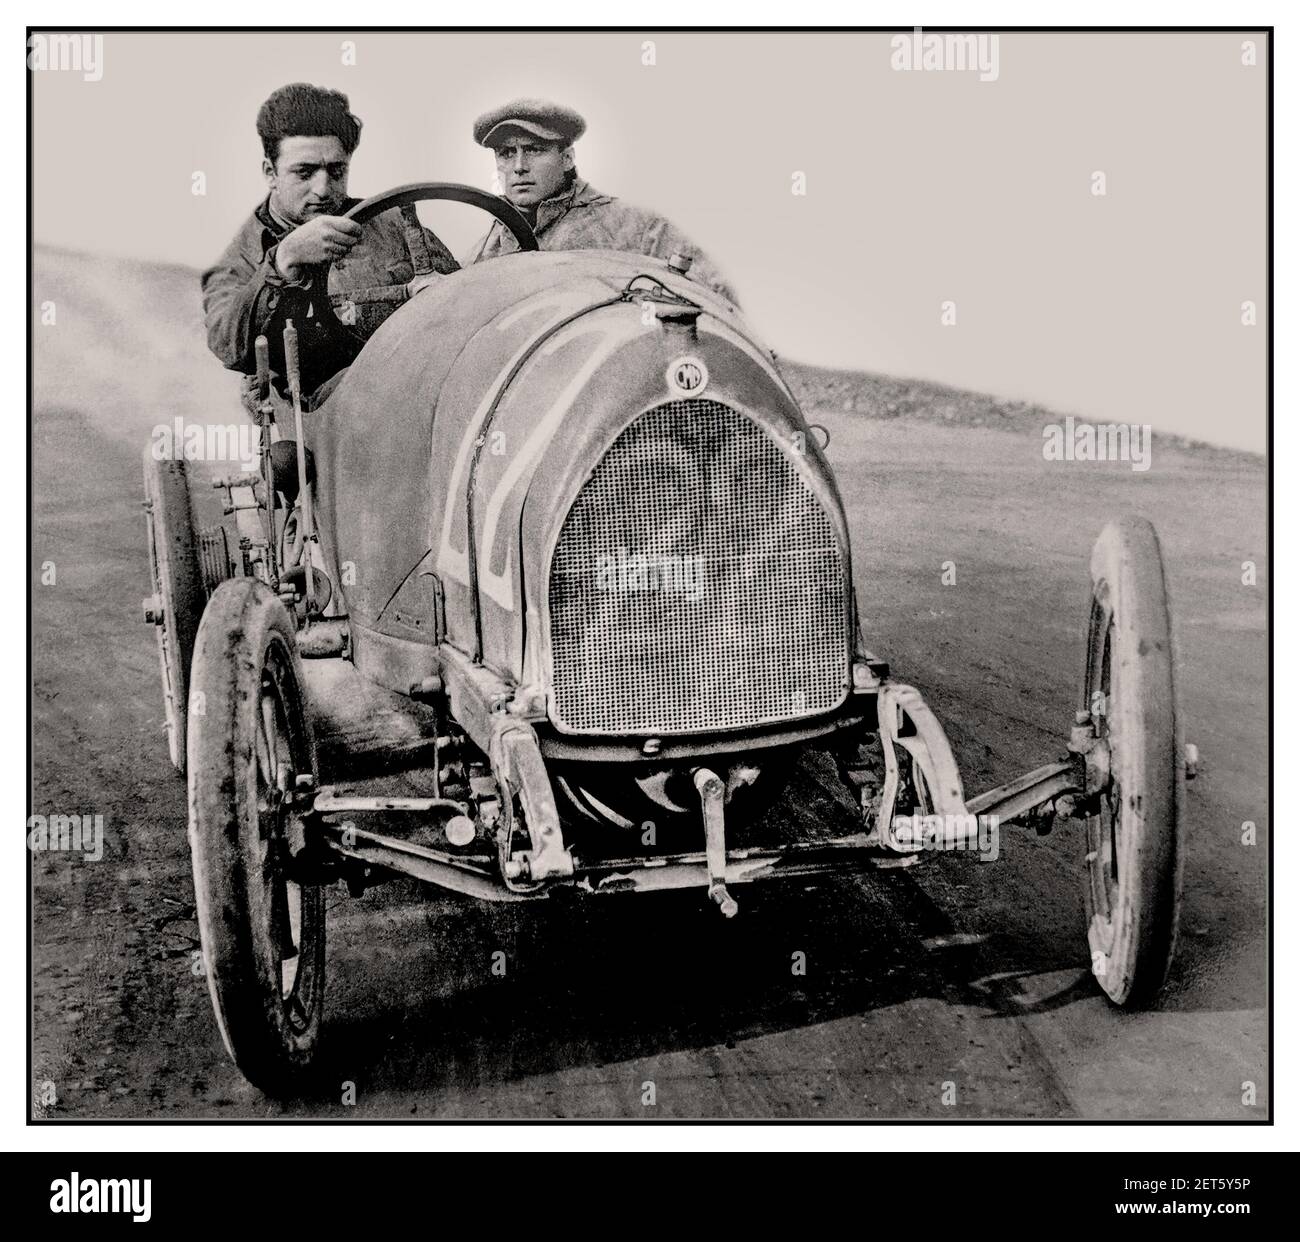 ENZO FERRARI Archivio Vintage 1919 immagine di un giovane Enzo Ferrari nella sua prima gara di sempre come pilota professionista nel n.22 C.M.N. (Costruzioni meccaniche Nazionali) pista di salita Parma-Poggio di Berceto 1919 Foto Stock